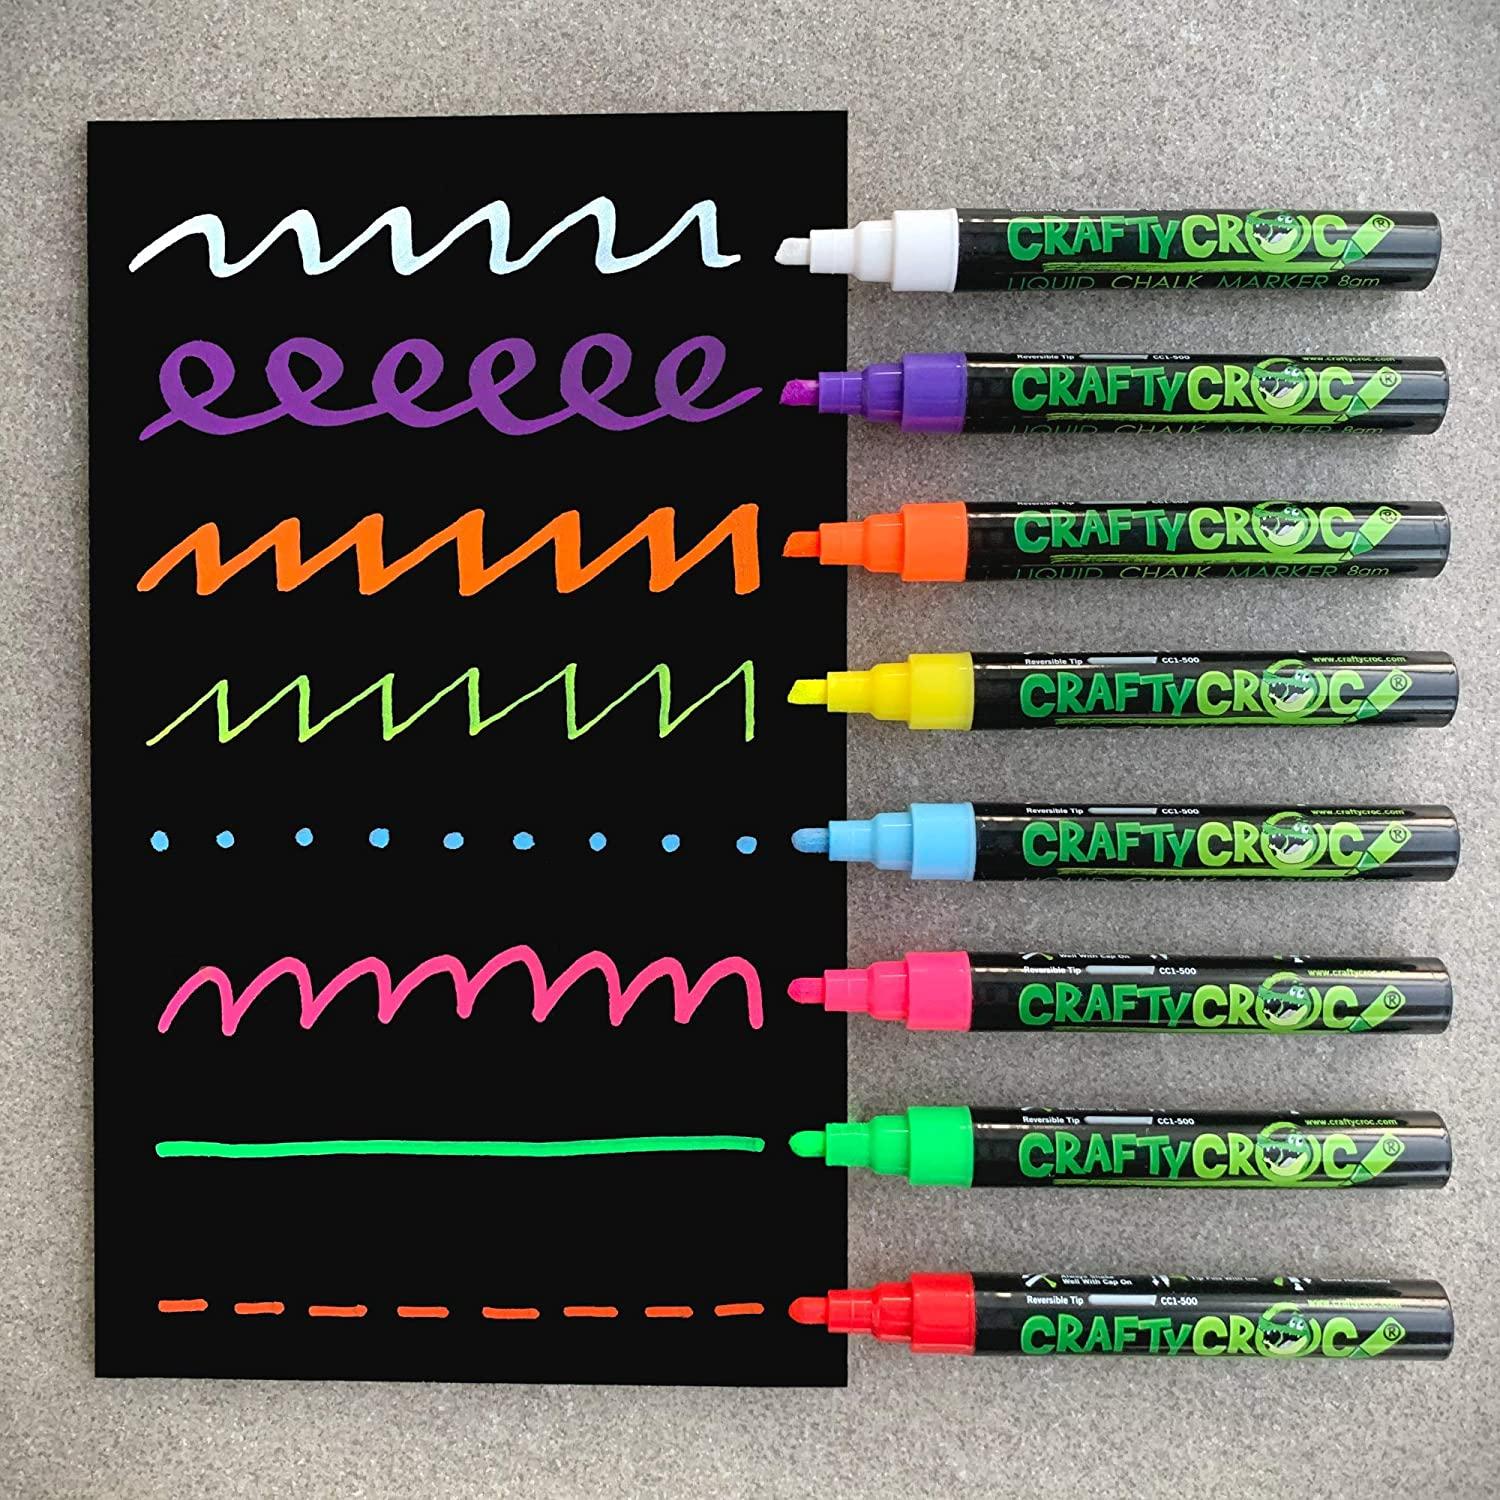 8 Colors Removable Liquid Chalk Paint Windows Markers Pen Mirrors